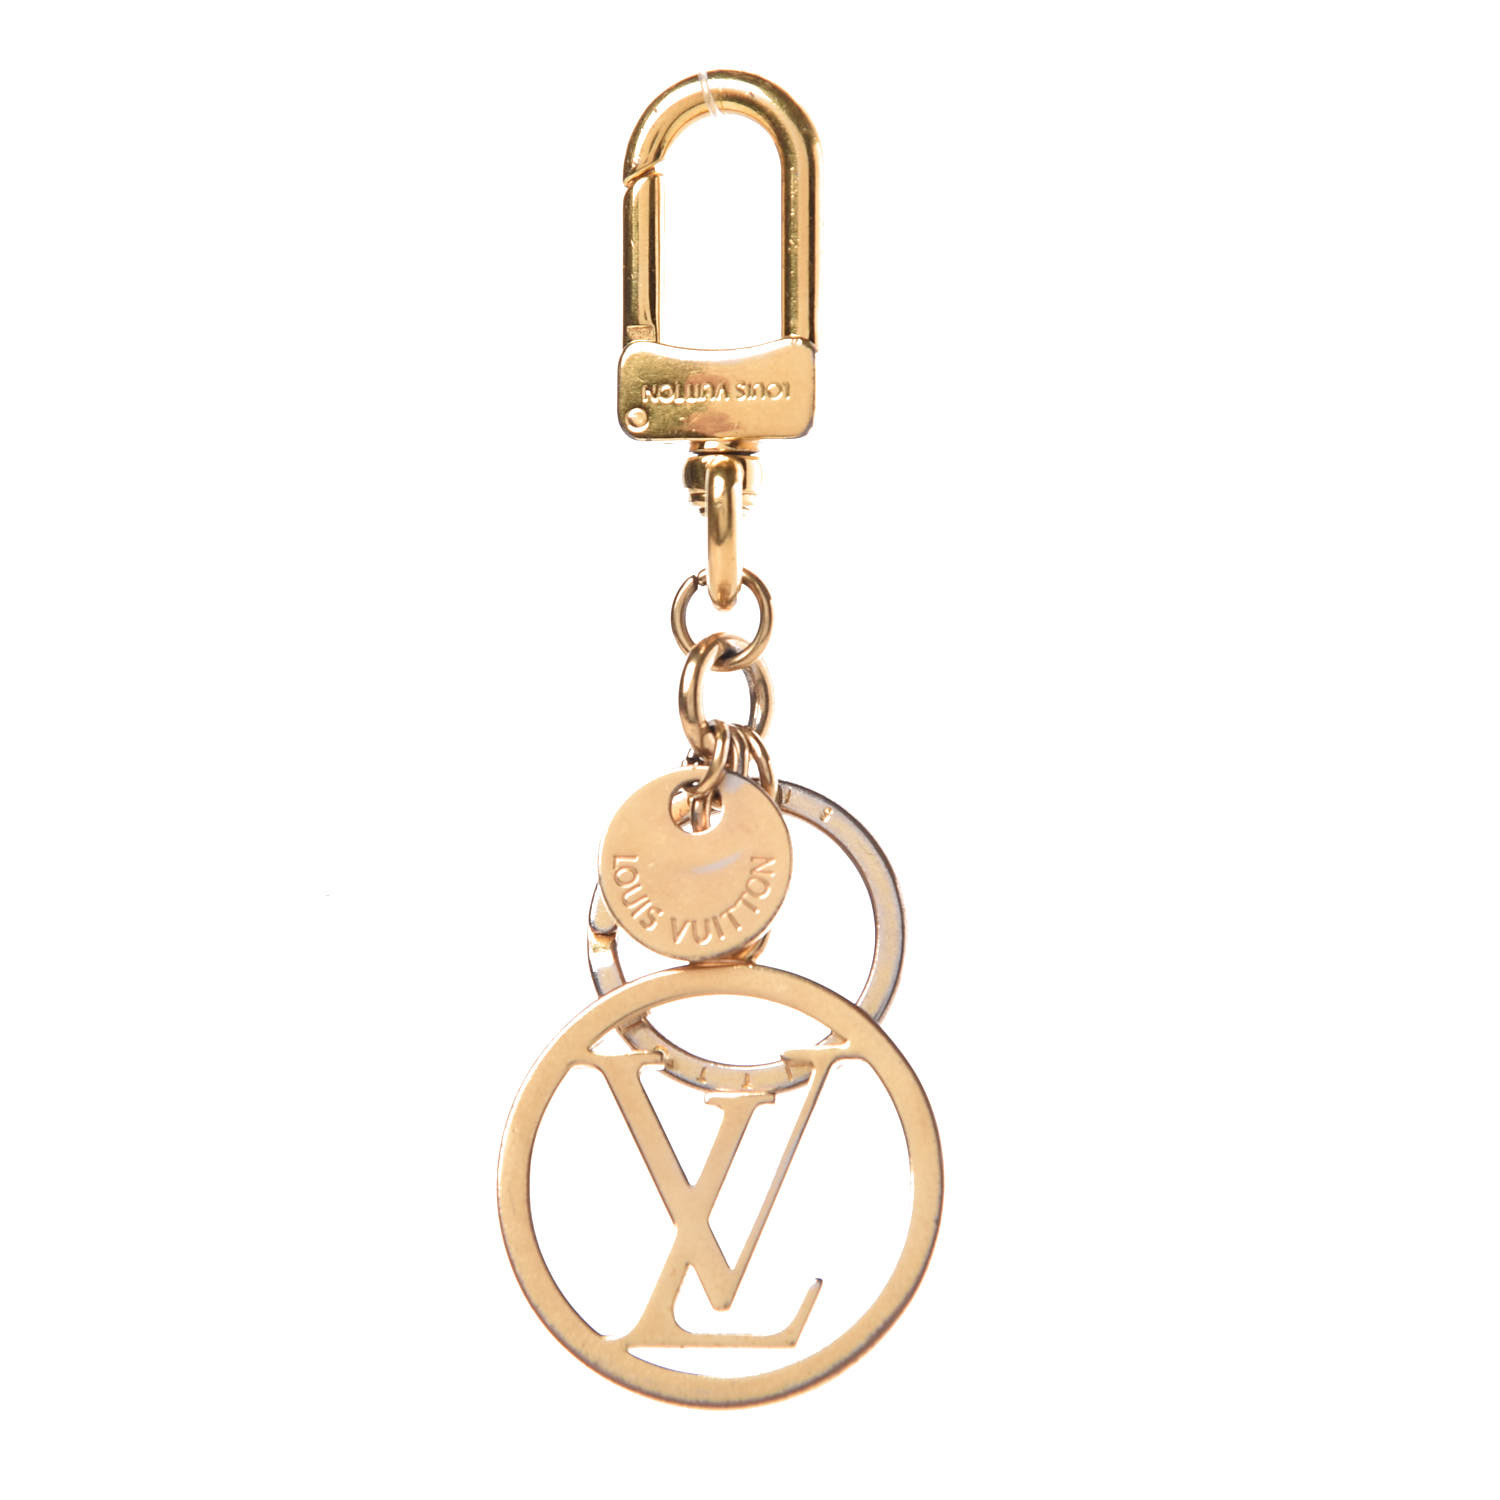 Louis Vuitton Key Ring   Natural Resource Department